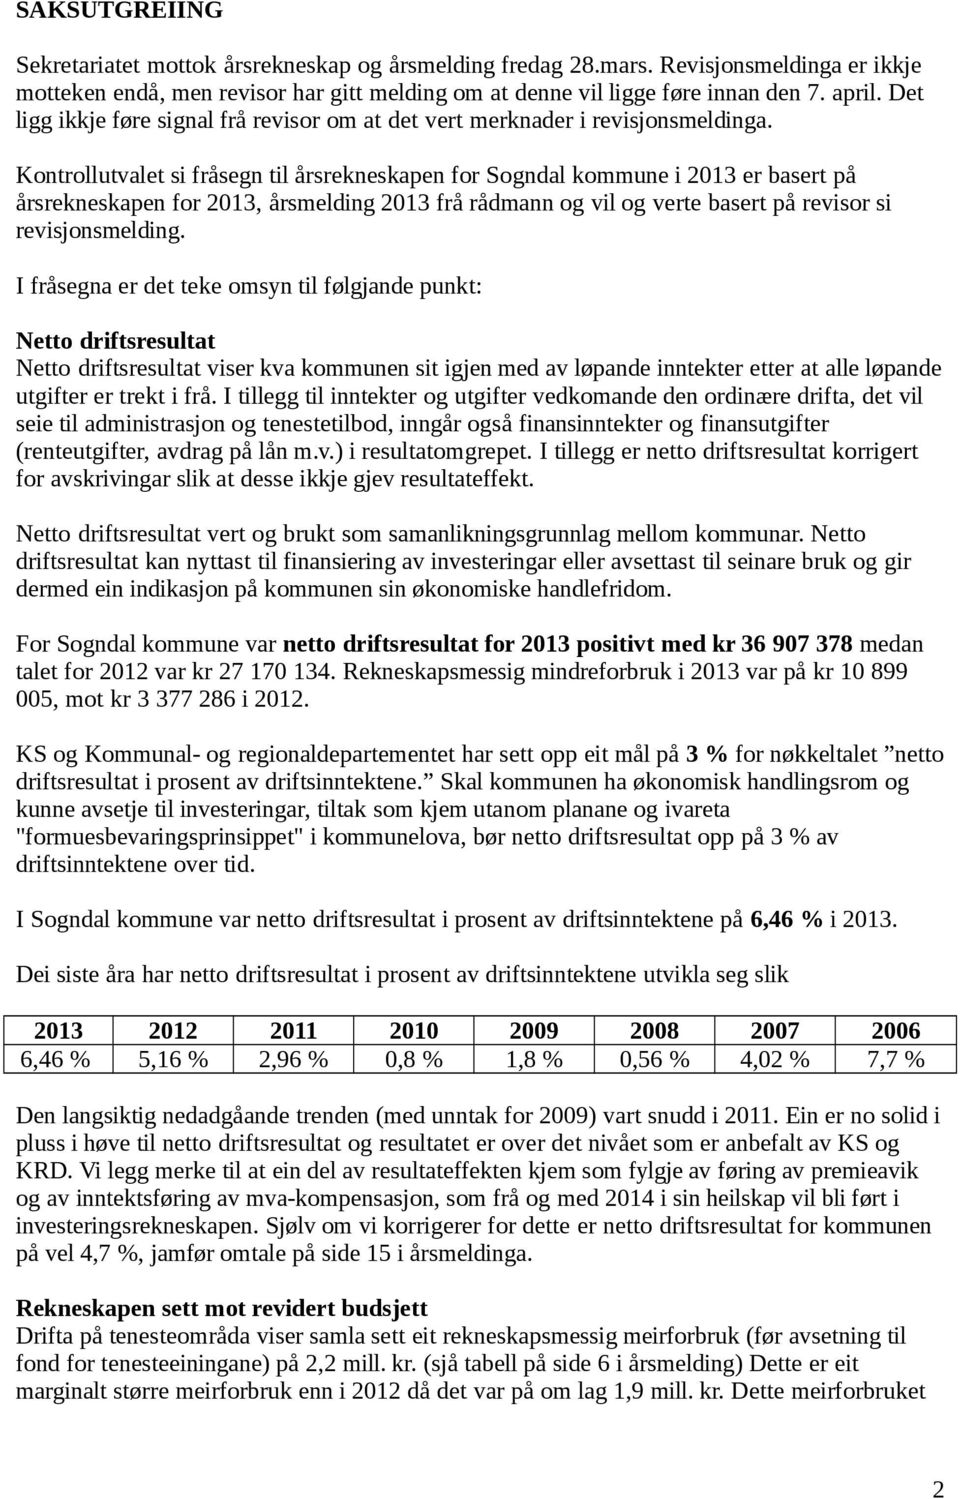 Kontrollutvalet si fråsegn til årsrekneskapen for Sogndal kommune i 2013 er basert på årsrekneskapen for 2013, årsmelding 2013 frå rådmann og vil og verte basert på revisor si revisjonsmelding.